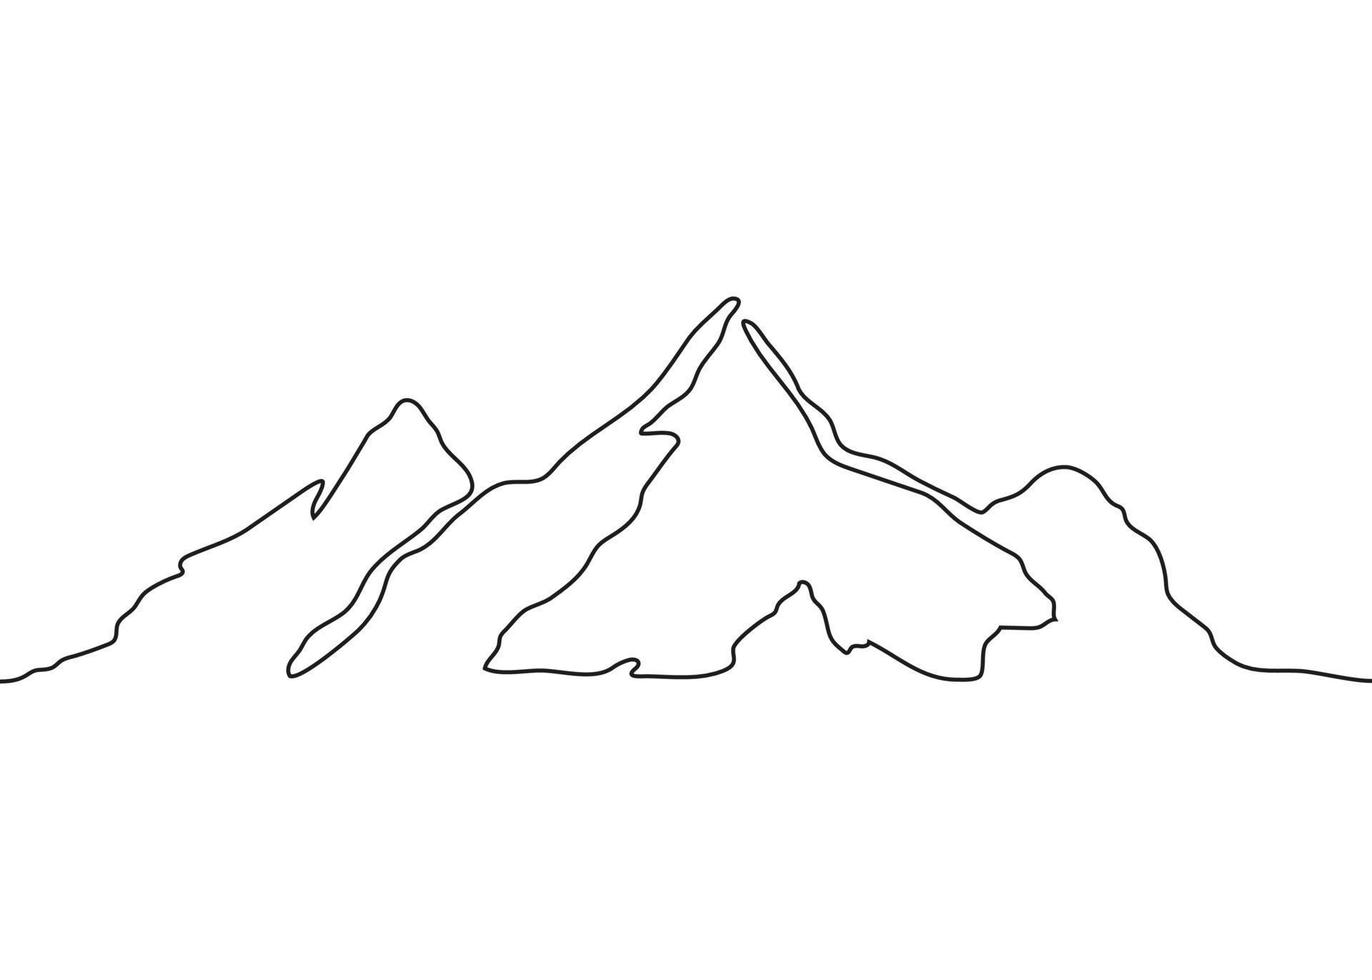 Berglandschaft, eine fortlaufende Kunstzeichnung. Kette von Bergen, Hügeln, Natur in einfachen Umrissen. Vektor-Illustration vektor